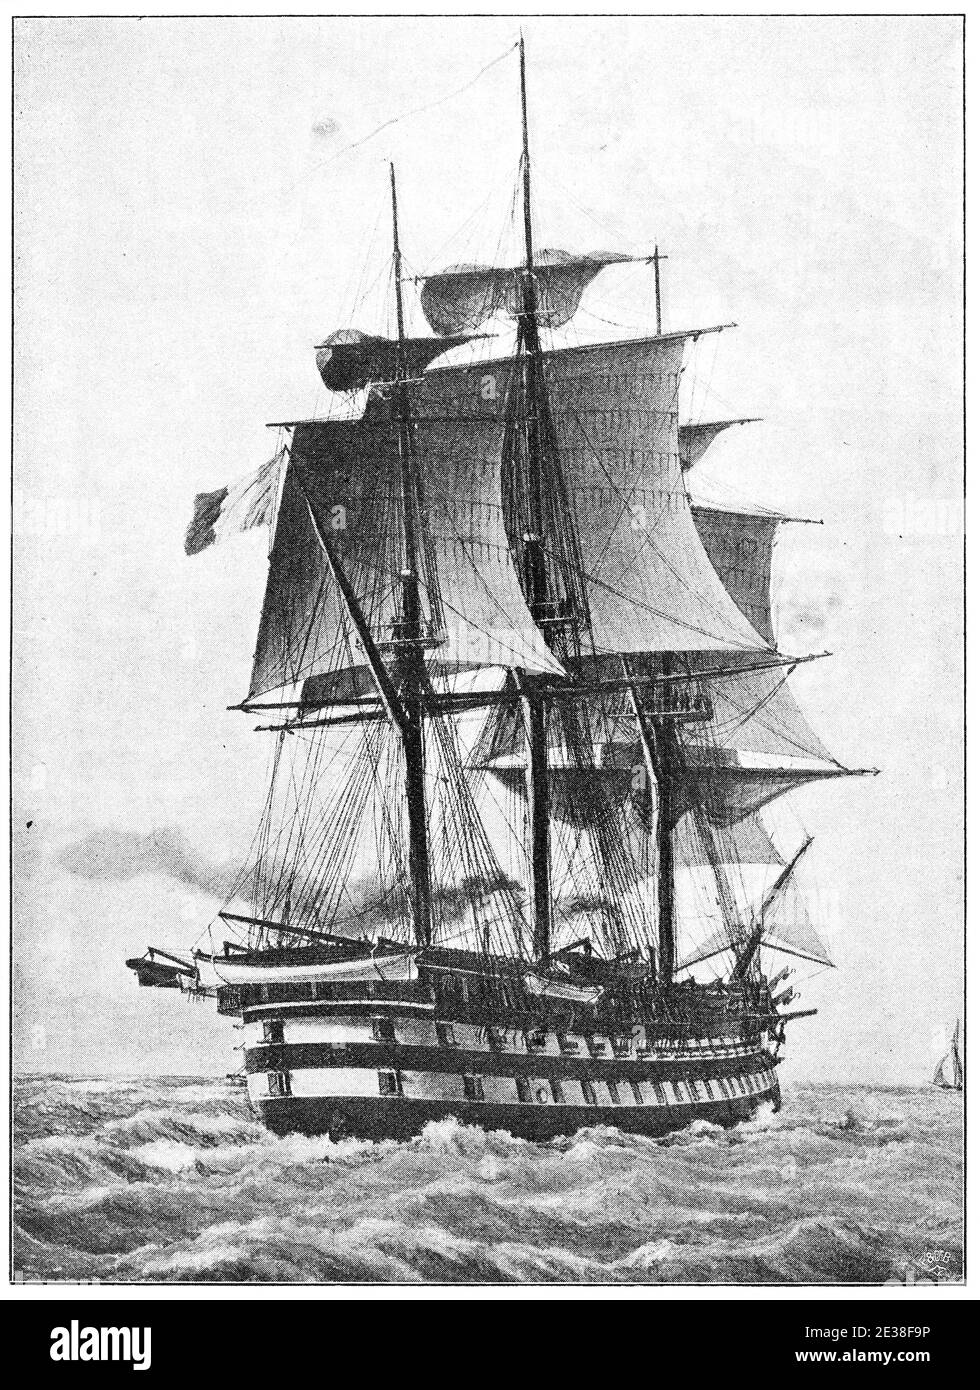 Napoléon (1850) - un navire de 90 canons de la ligne de la Marine française, et le premier cuirassé à vapeur au monde. Illustration du 19e siècle. Allemagne. Arrière-plan blanc. Banque D'Images